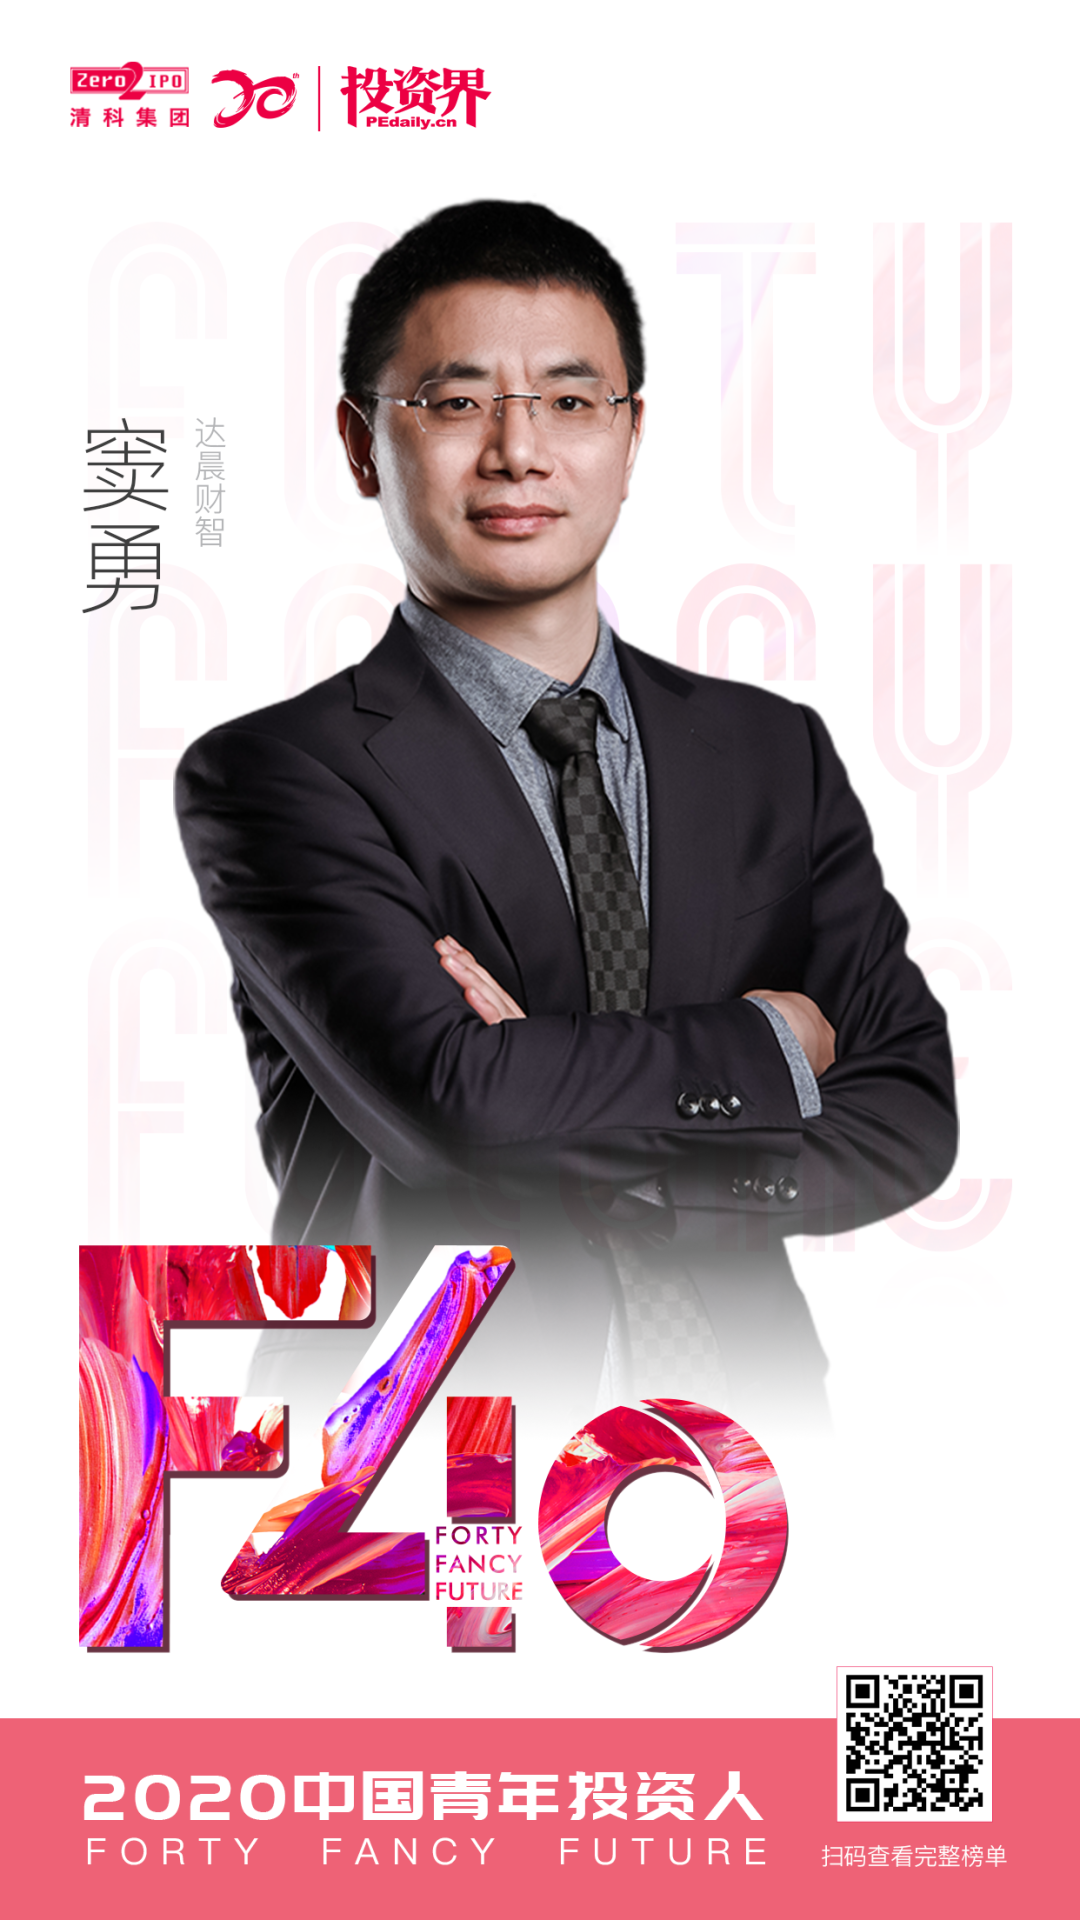 我司合伙人窦勇入选f40中国青年投资人榜单